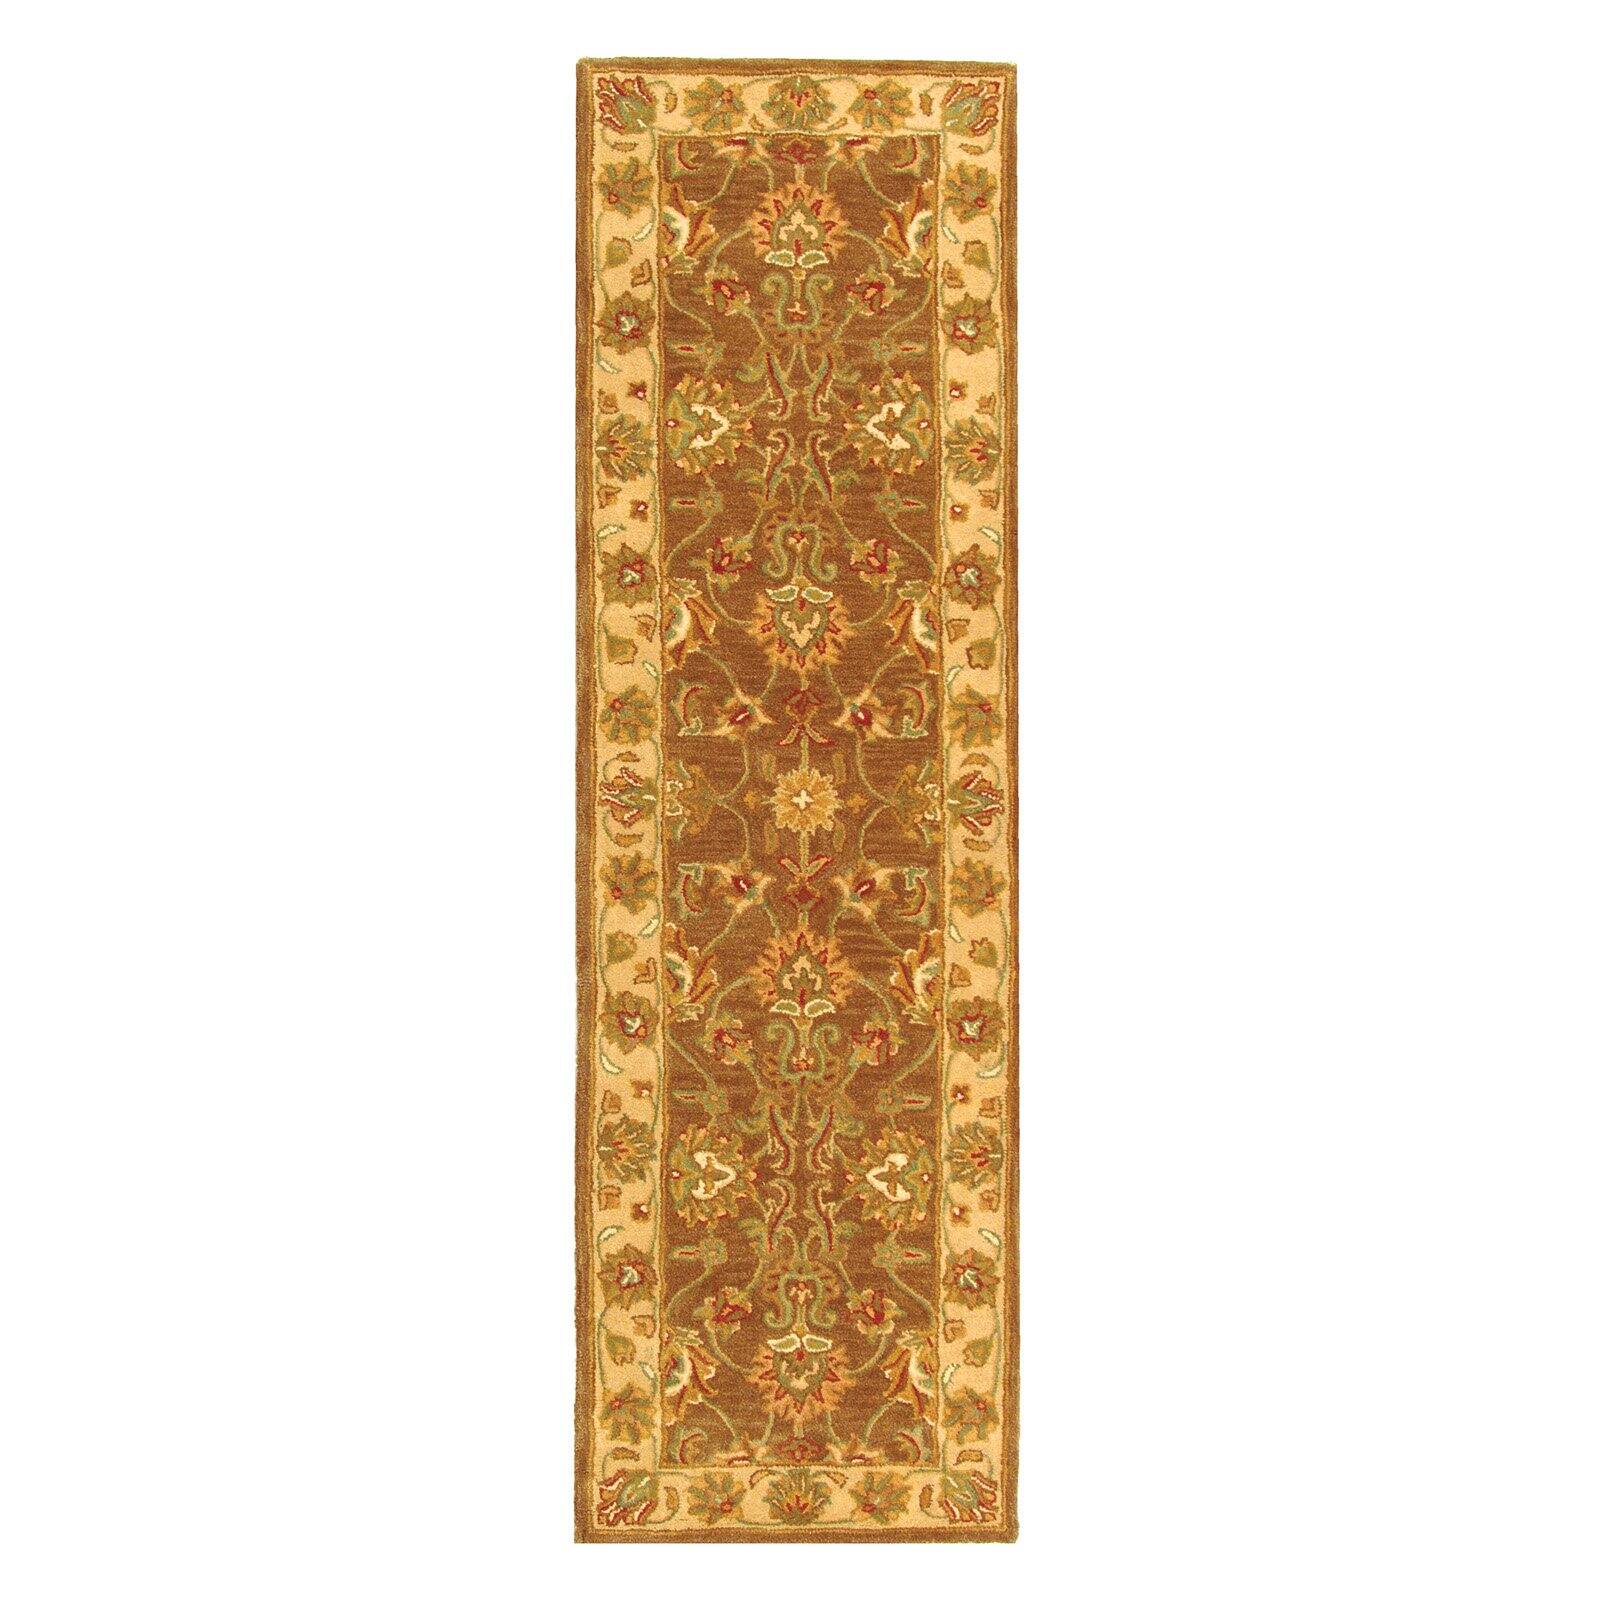 SAFAVIEH Heritage Regis Traditional Wool Runner Rug, Brown/Ivory, 2'3" x 8' - image 3 of 9